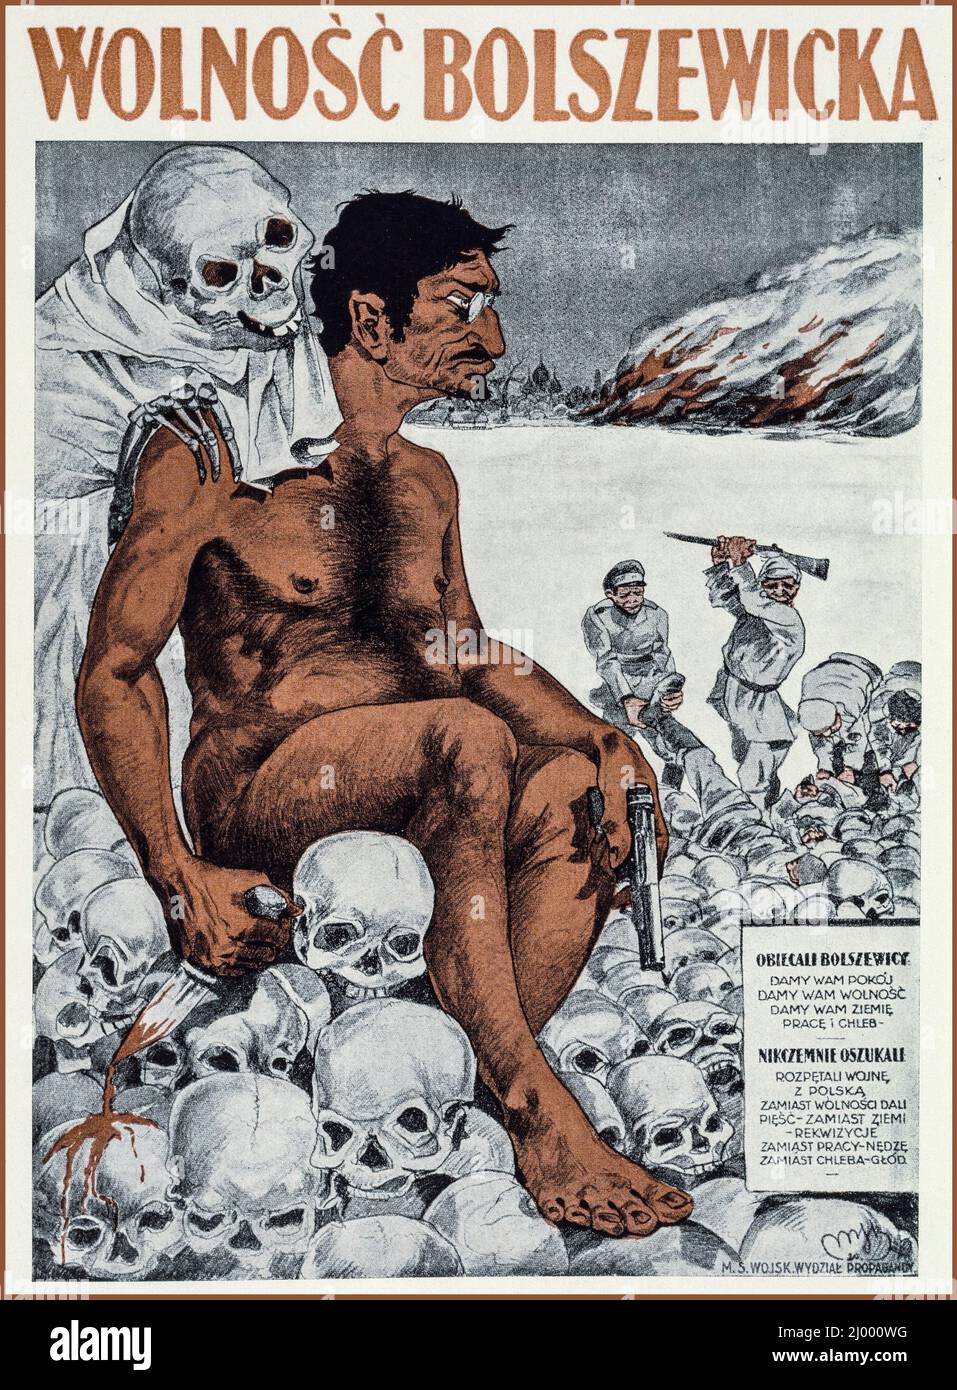 Vintage Propaganda Poster 1920 Trotzki, dargestellt von der polnischen Propaganda (1920) als blutgetränkter Bolschewik während des polnisch-russischen Krieges von 1920. Antikommunistisches Plakat der polnischen Regierung zur Bekämpfung der bolschewistischen Propaganda aus Russland während des polnisch-russischen Krieges 1920 Stockfoto